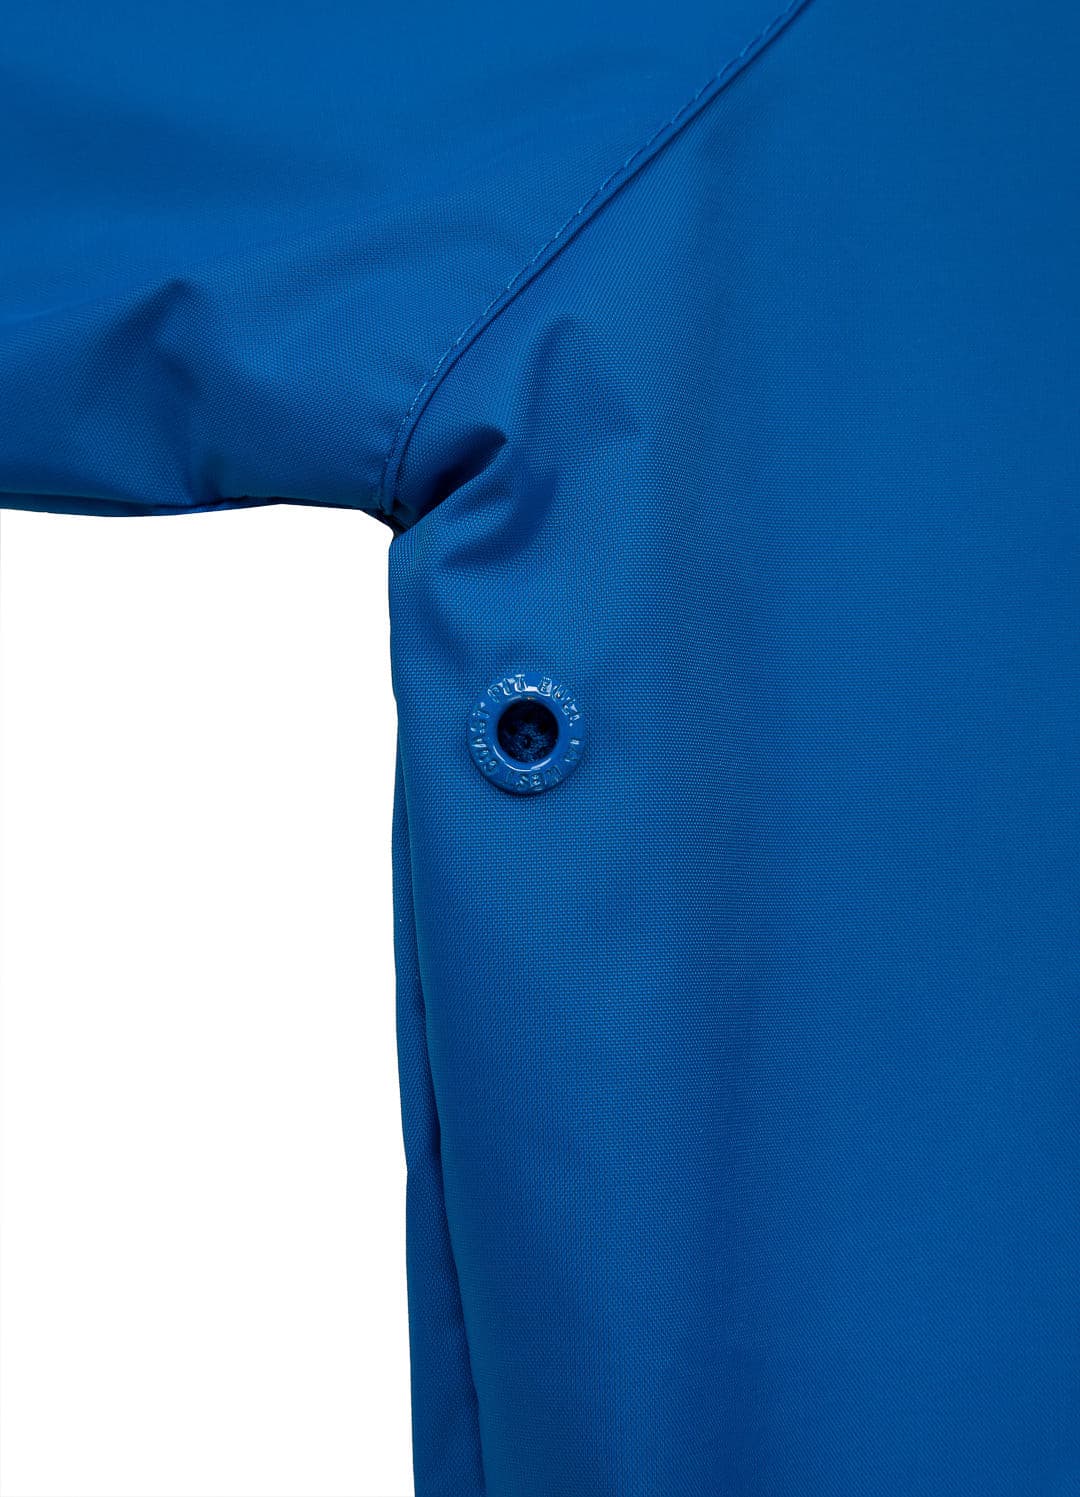 ATHLETIC Royal Blue Jacket.